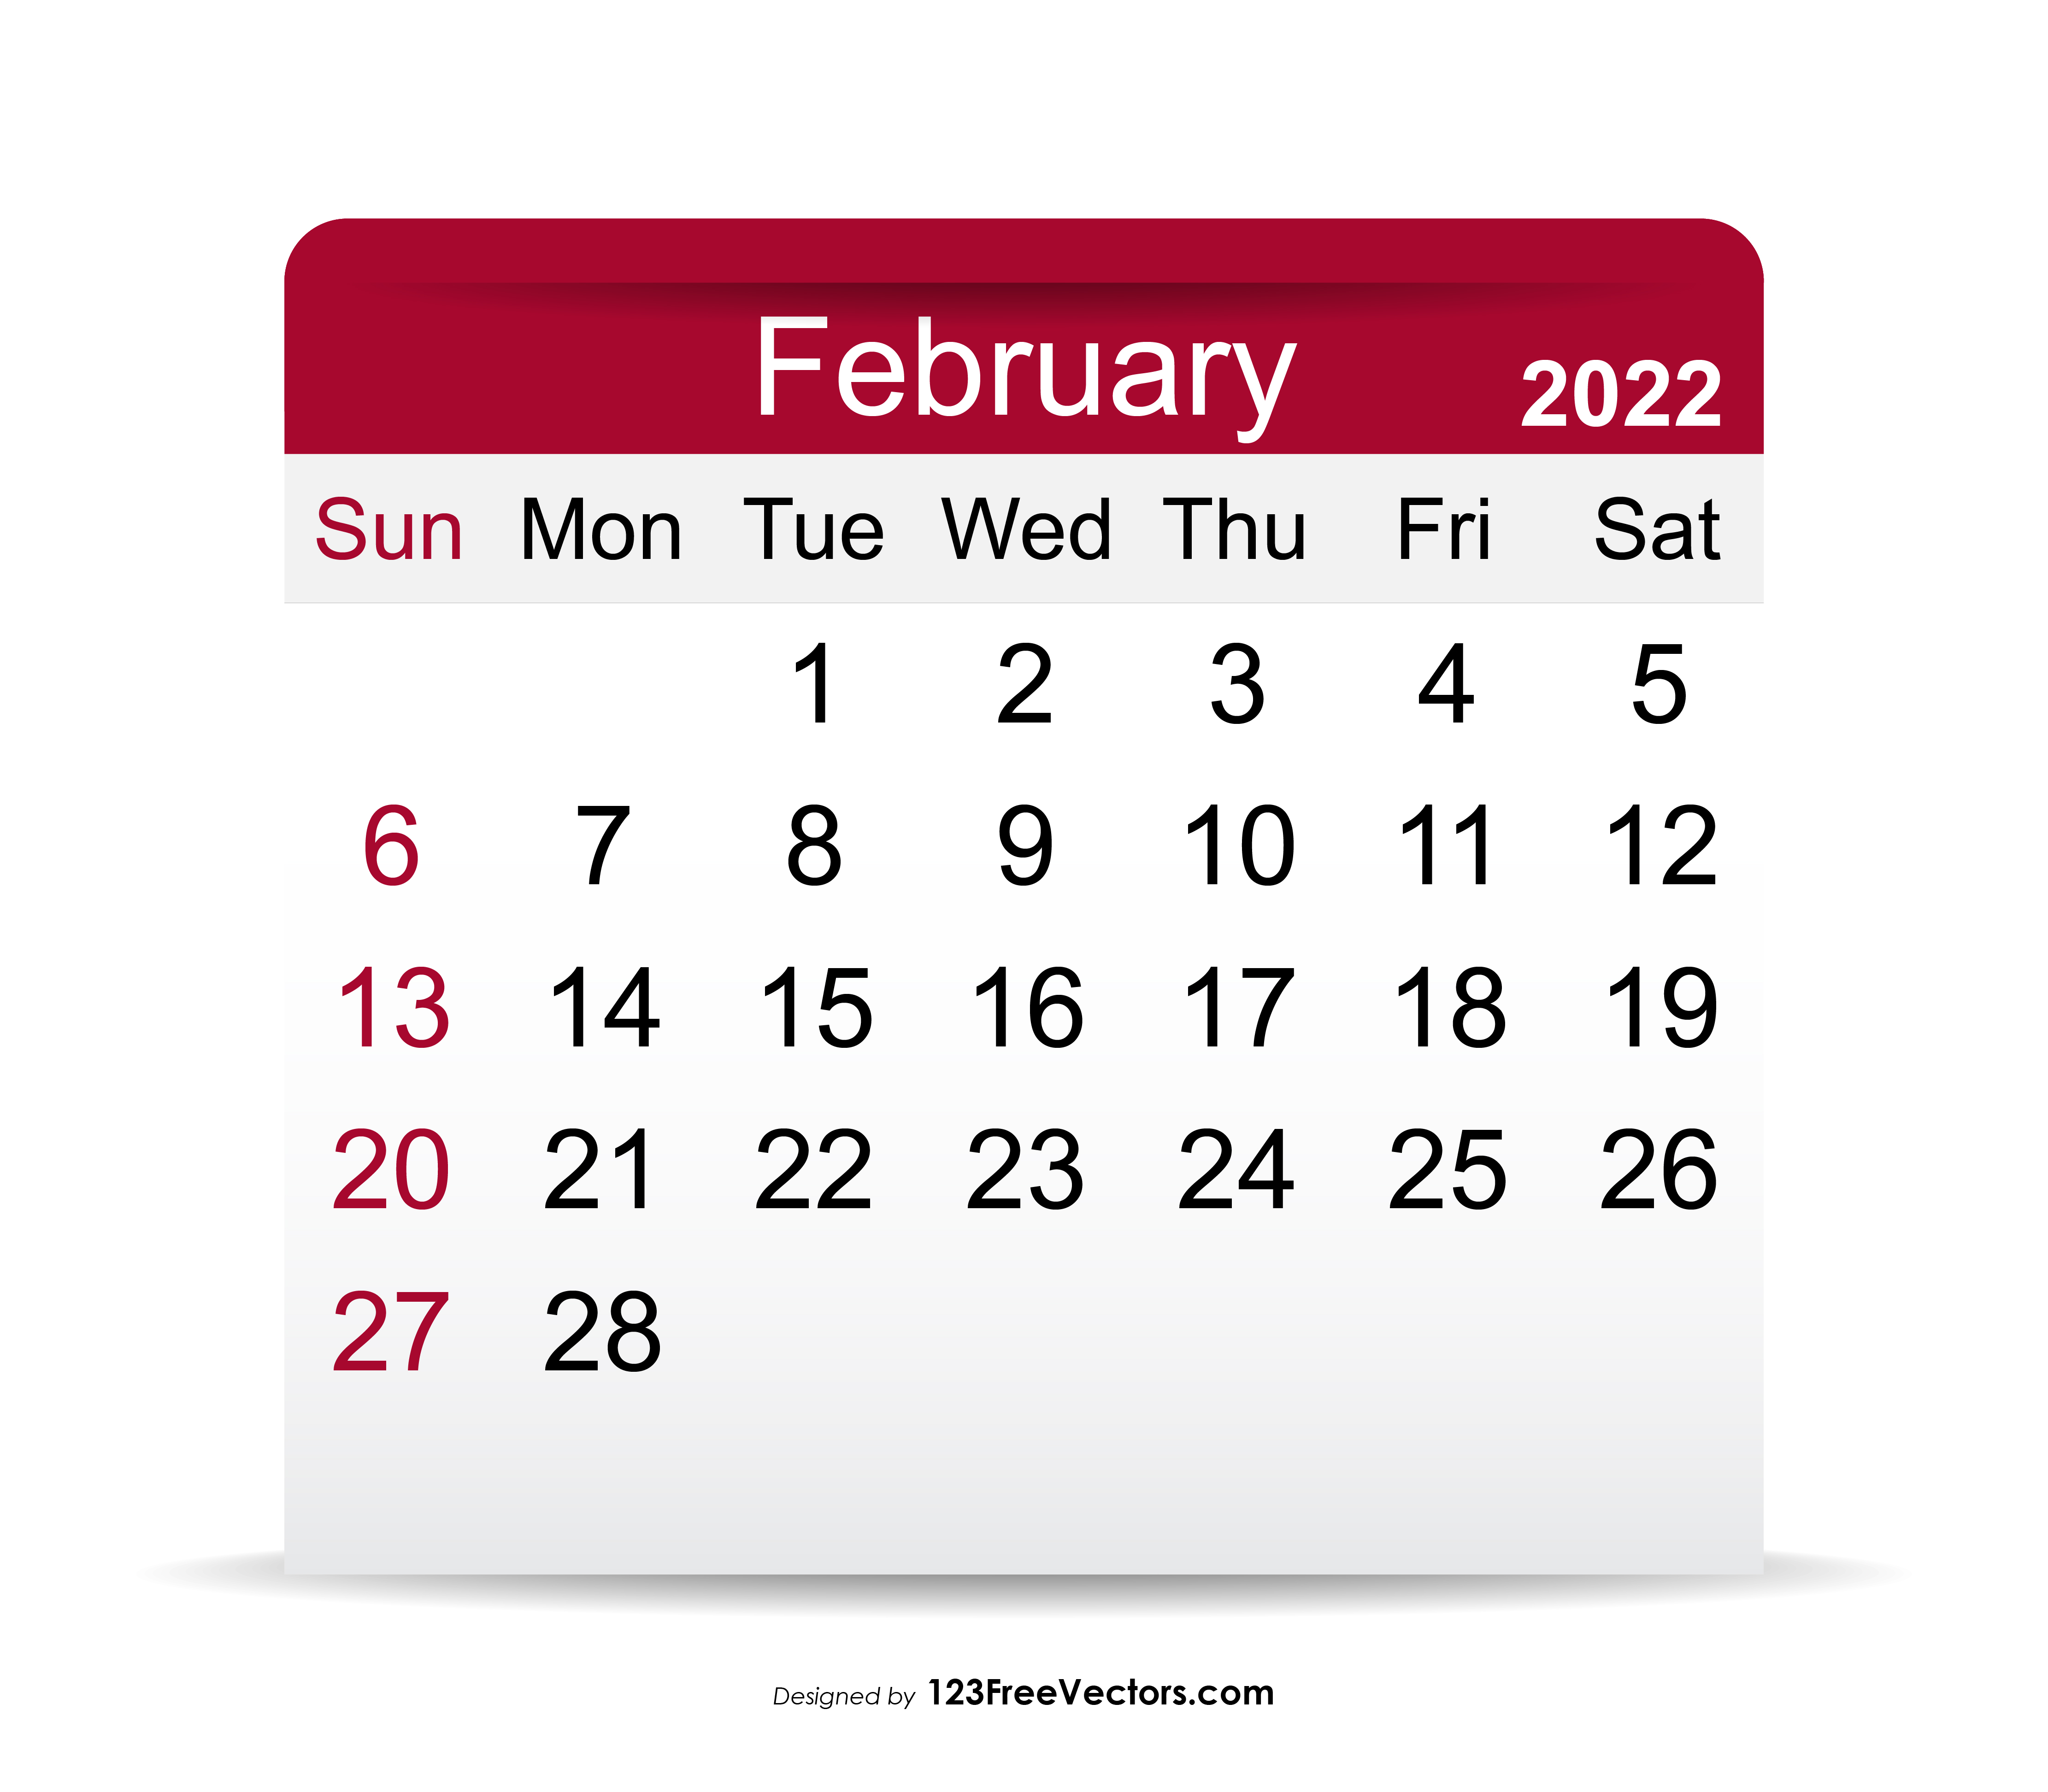 February 2022 Calendar Free February 2022 Calendar